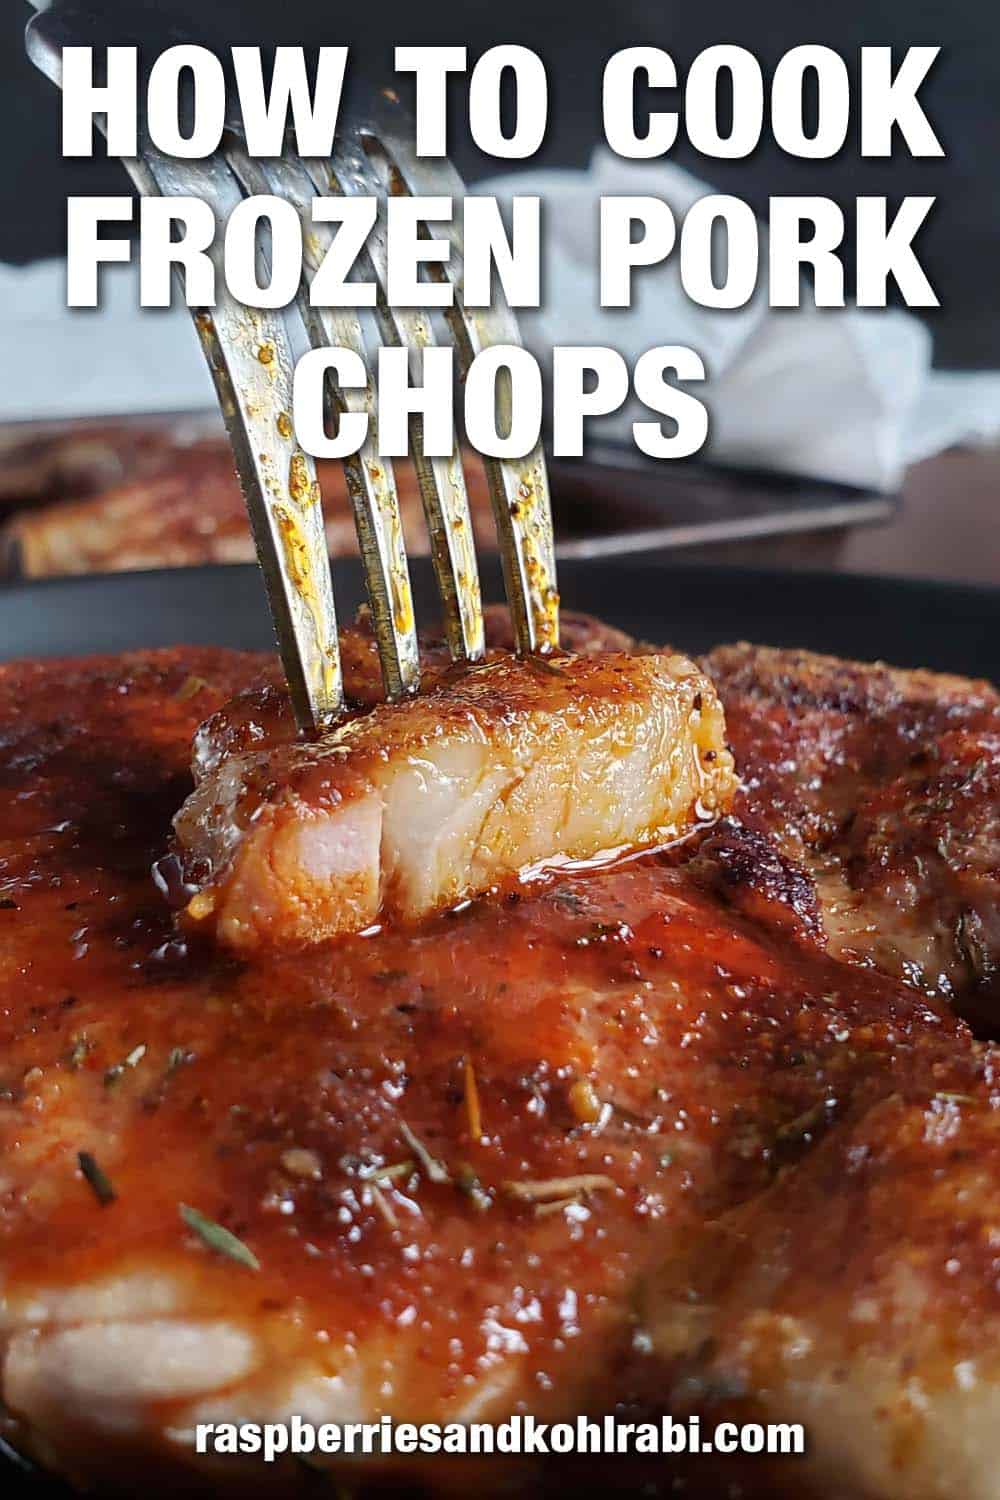 Slice of pork chop on a fork.